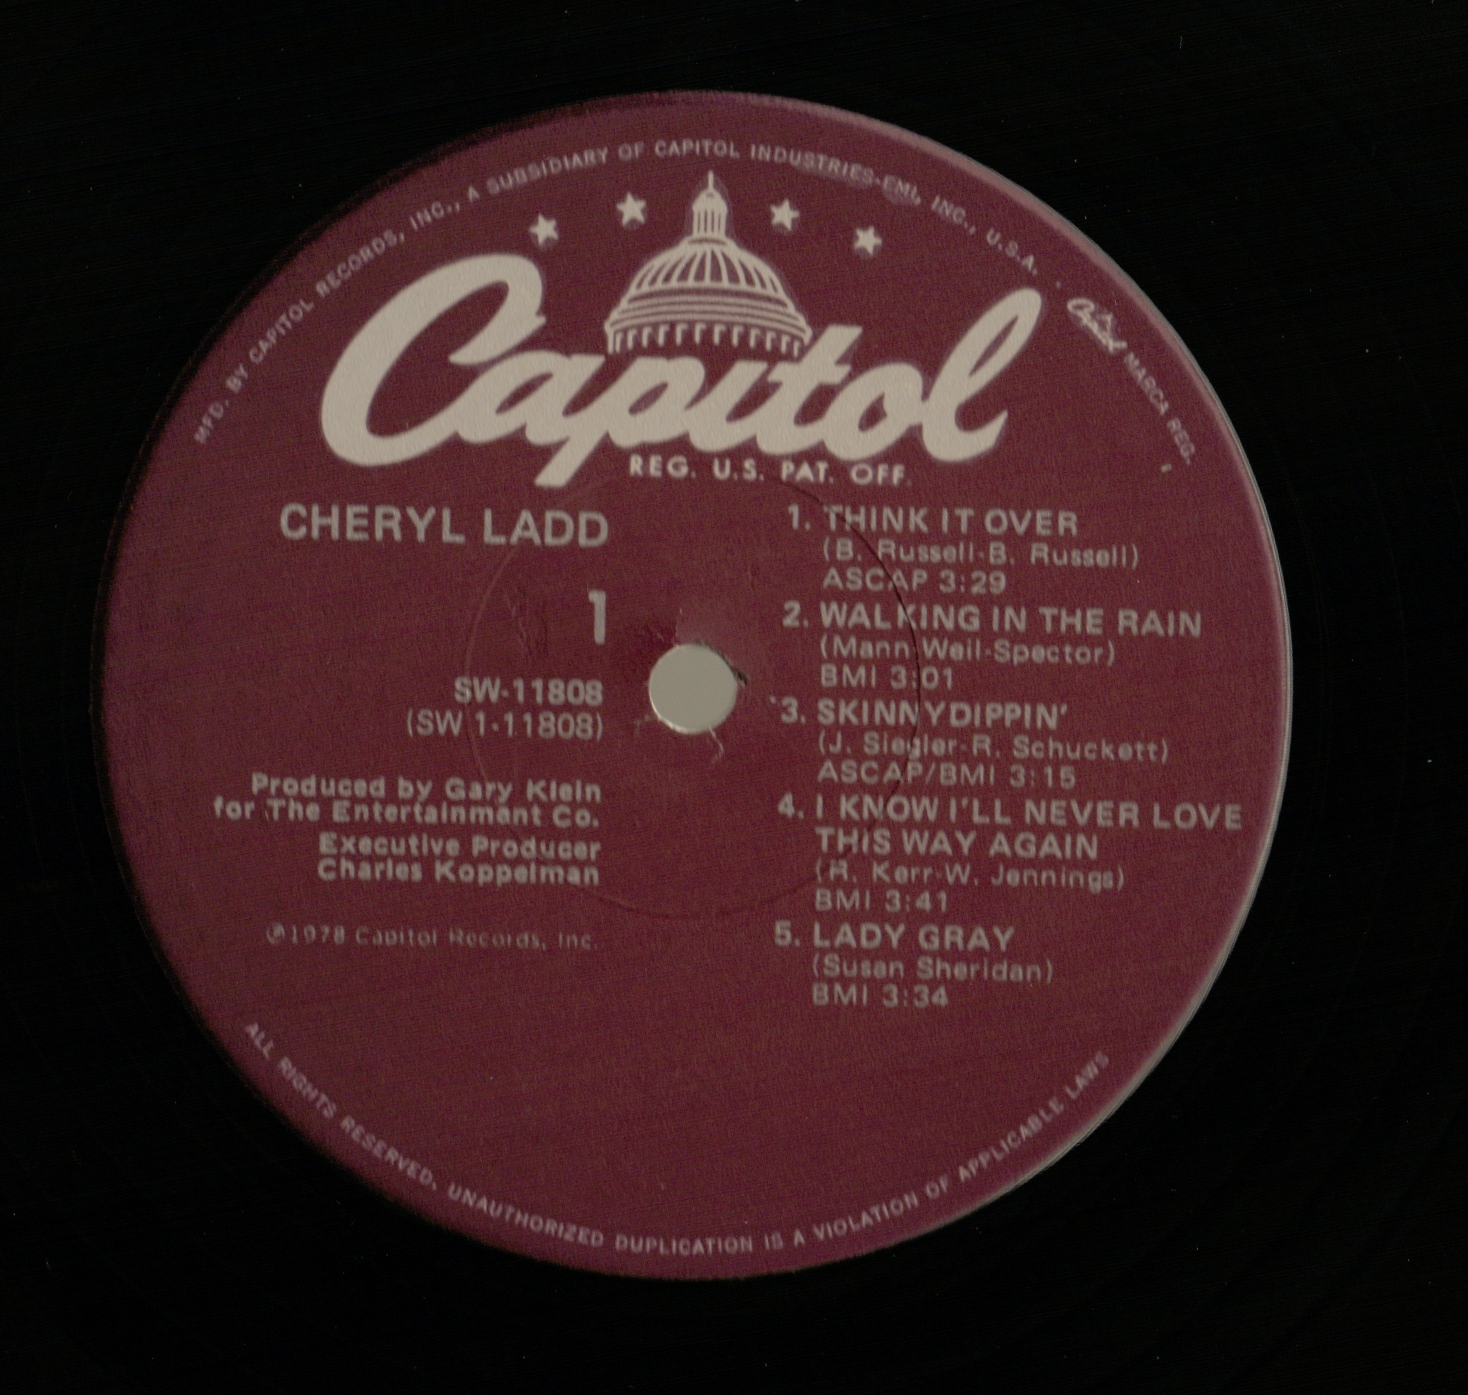 http://2.bp.blogspot.com/-h-MlyCpqWh8/TewJj_X2MEI/AAAAAAAAApw/ab2qnecVnPg/s1600/Cheryl+Ladd+-+Chery+Ladd+-+Side+A.jpg